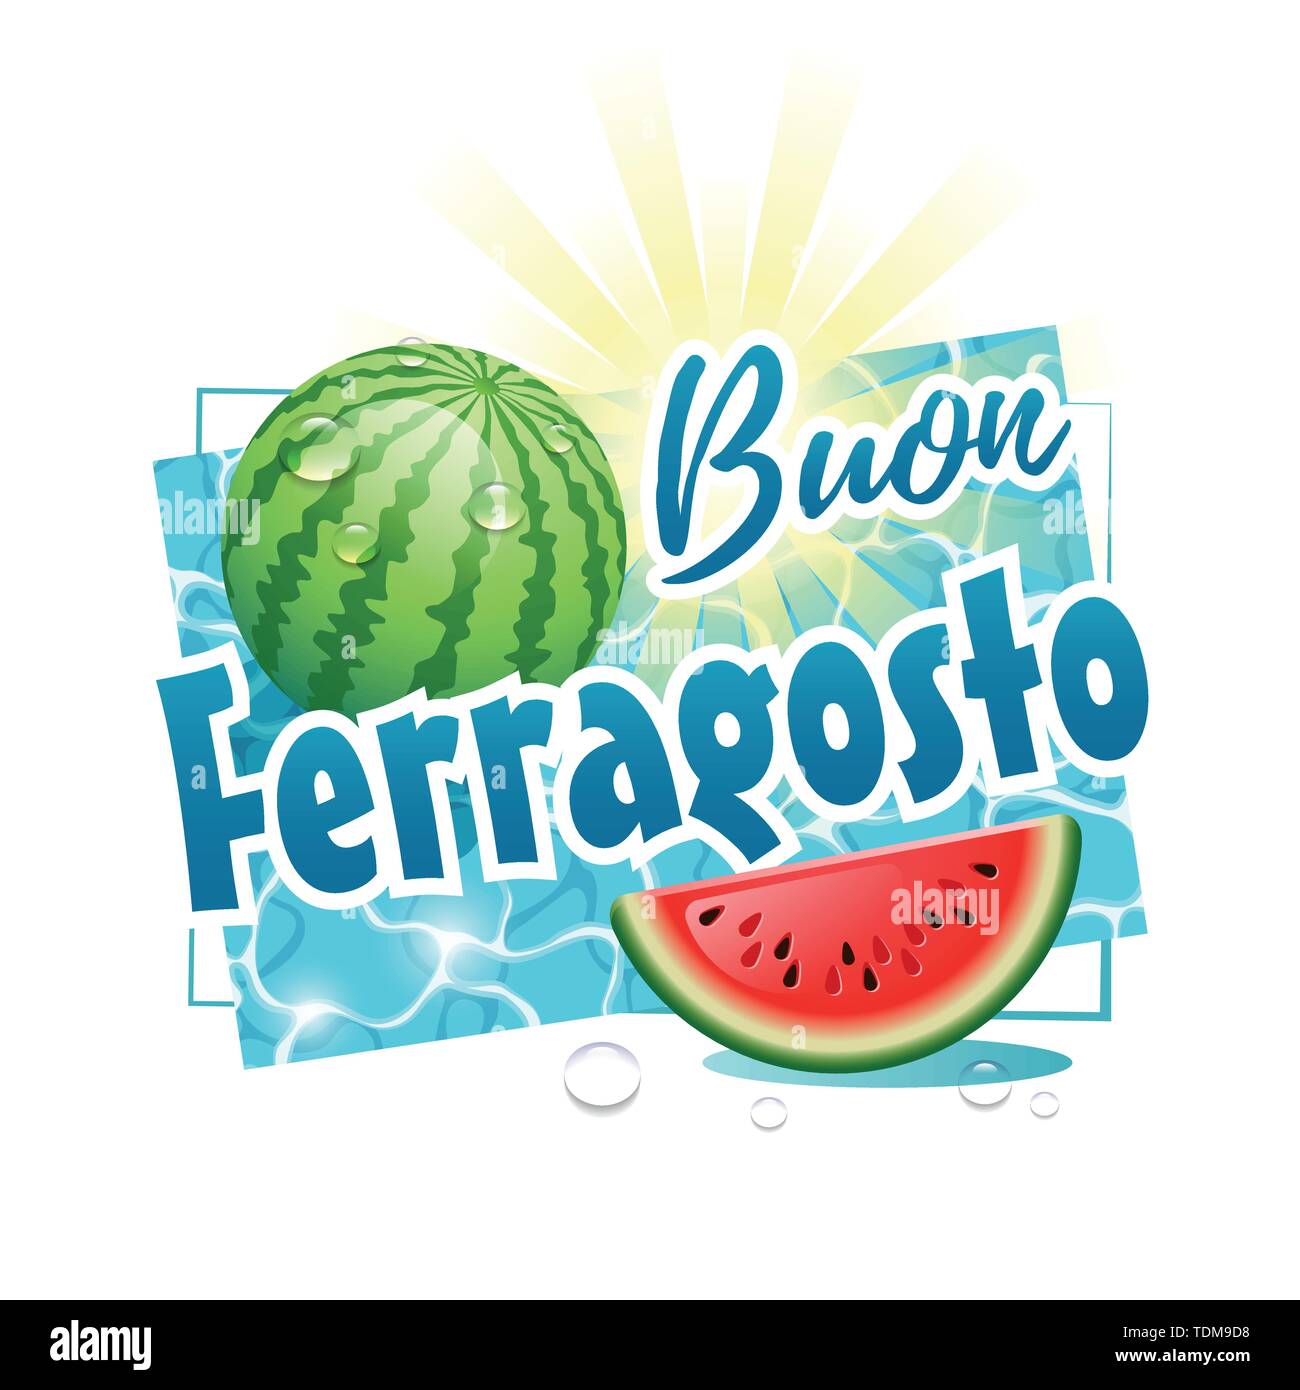 Buon Ferragosto. Happy Sommer Urlaub in Italienisch. Italienischer Sommer Festival Konzept mit Wassermelone, Sonne und Wasser Tropfen auf einem sonnigen Wasseroberfläche. Vect Stock Vektor